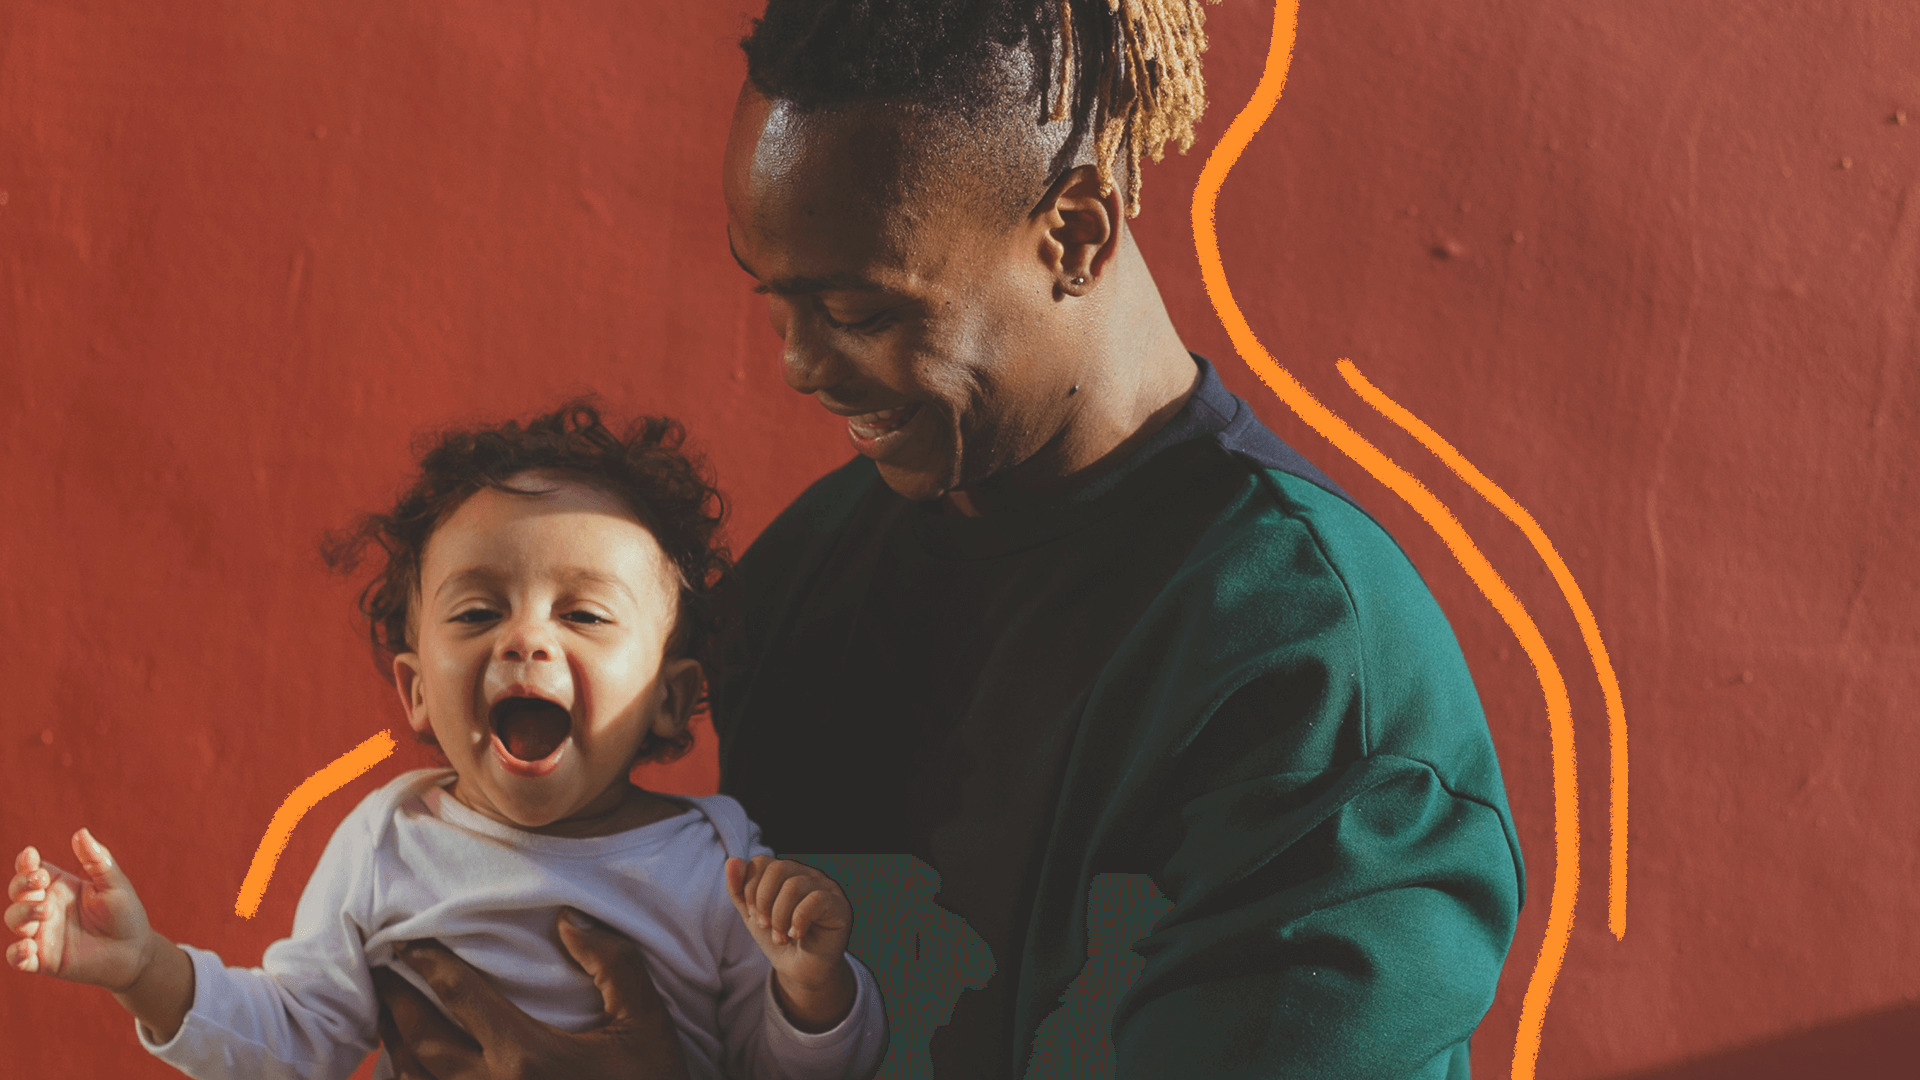 Um homem negro usando moletom verde escuro segura um bebê no colo, que usa roupa branca. O texto é sobre os 10 anos da Lei Menino Bernardo e como educar sem violência.